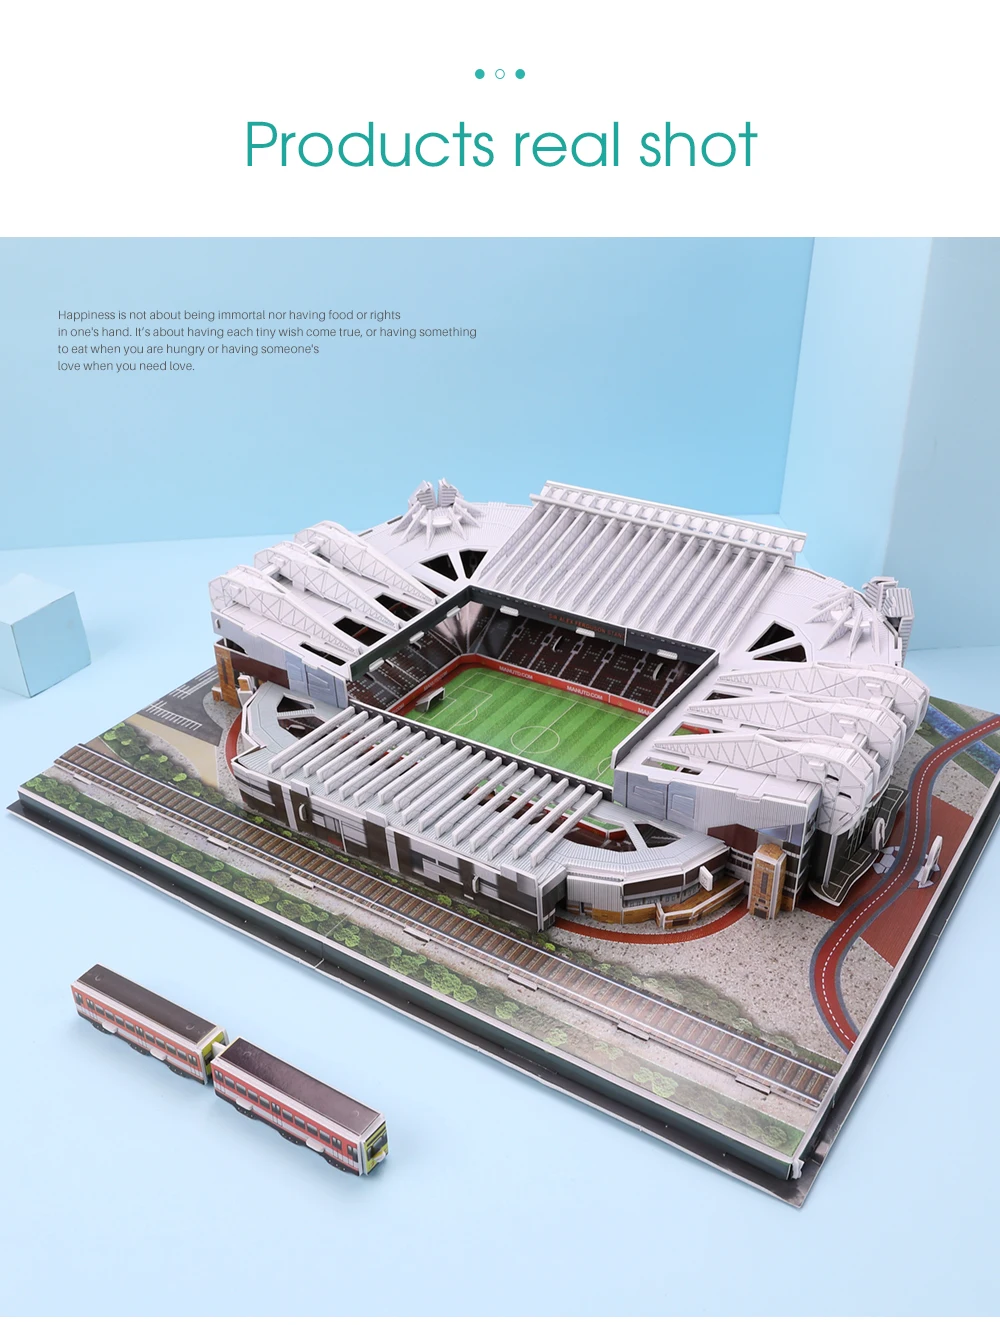 Классические головоломки архитектура лагерь ноу/анфилд/старый Траффорд футбол стадионы игрушечные масштабные модели наборы для ухода за